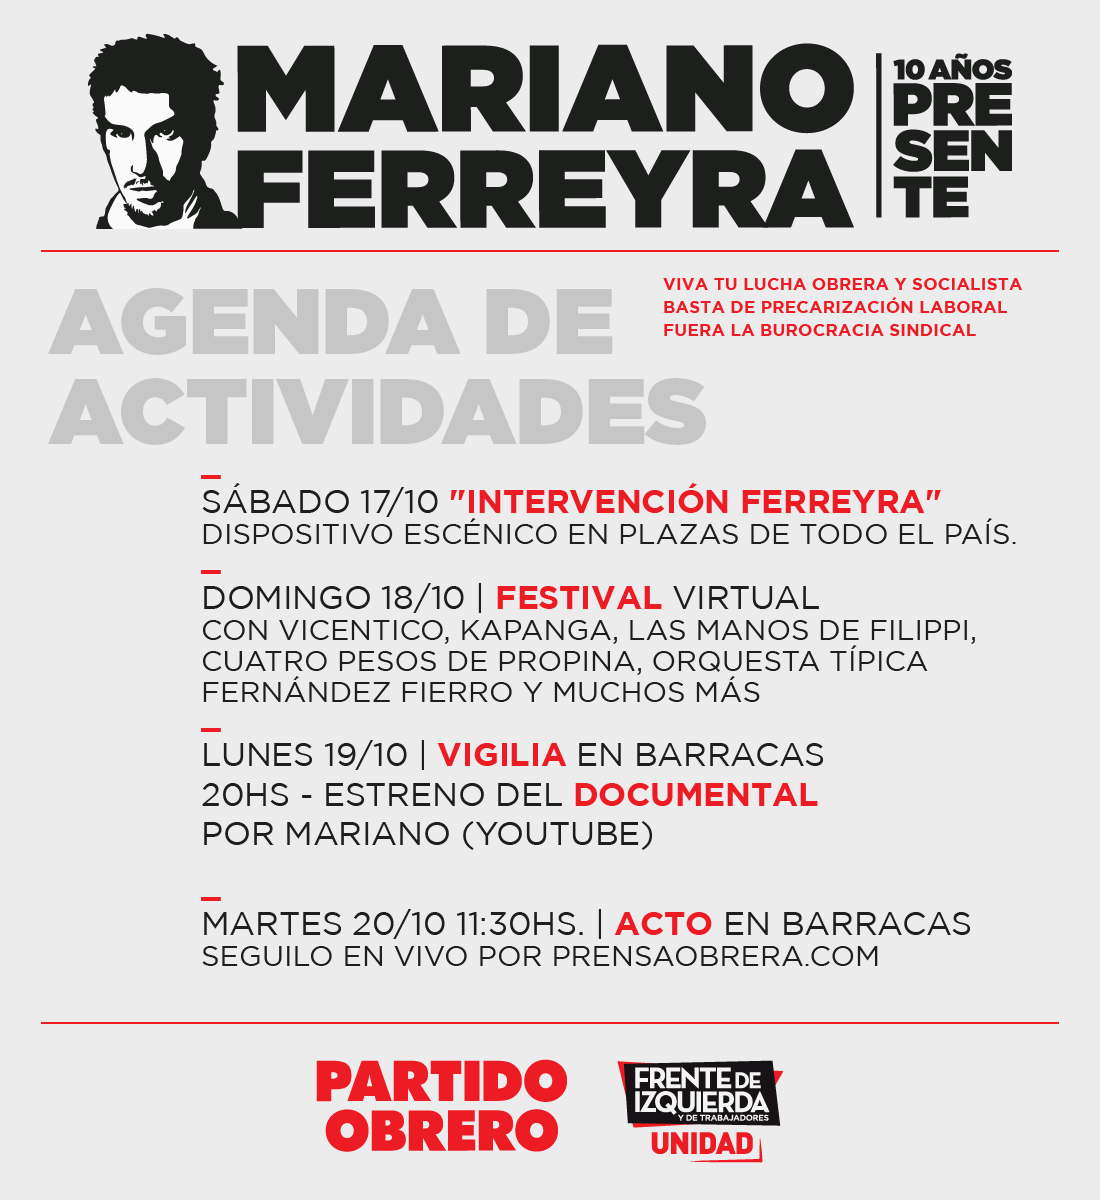 Mariano Ferreyra | 10 años PRESENTE